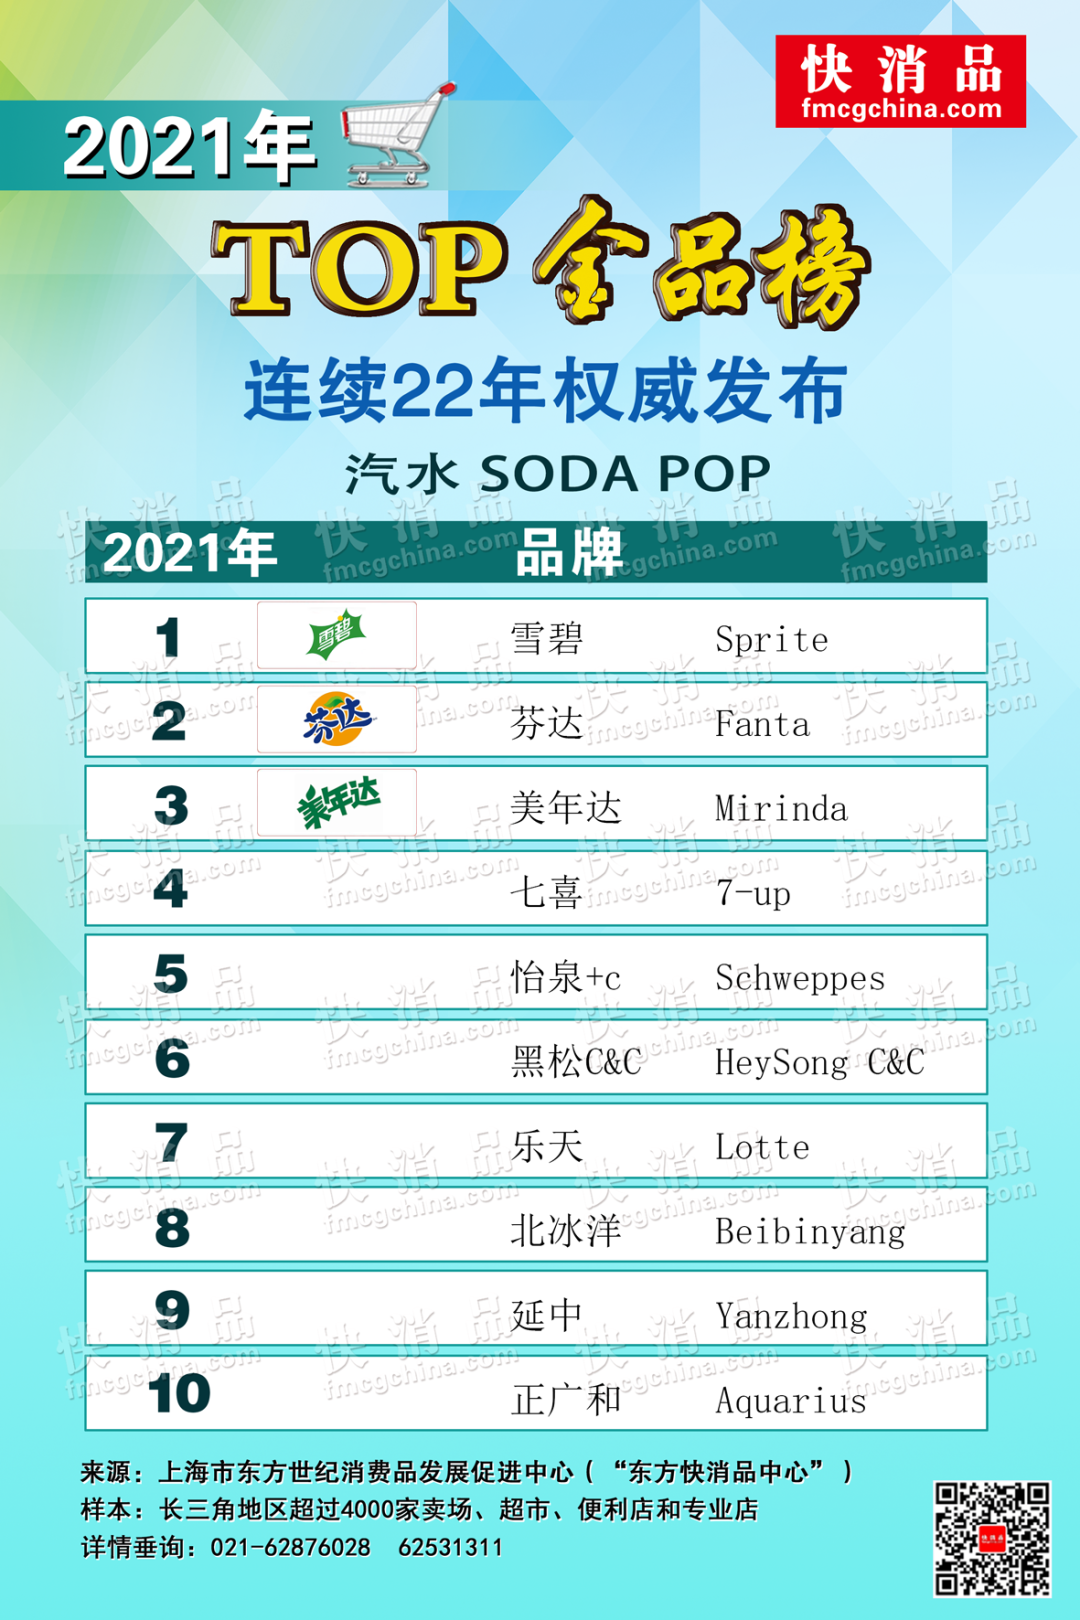 上海雪菲力盐汽水(「独家」“2021饮品TOP金品榜（之二）”)